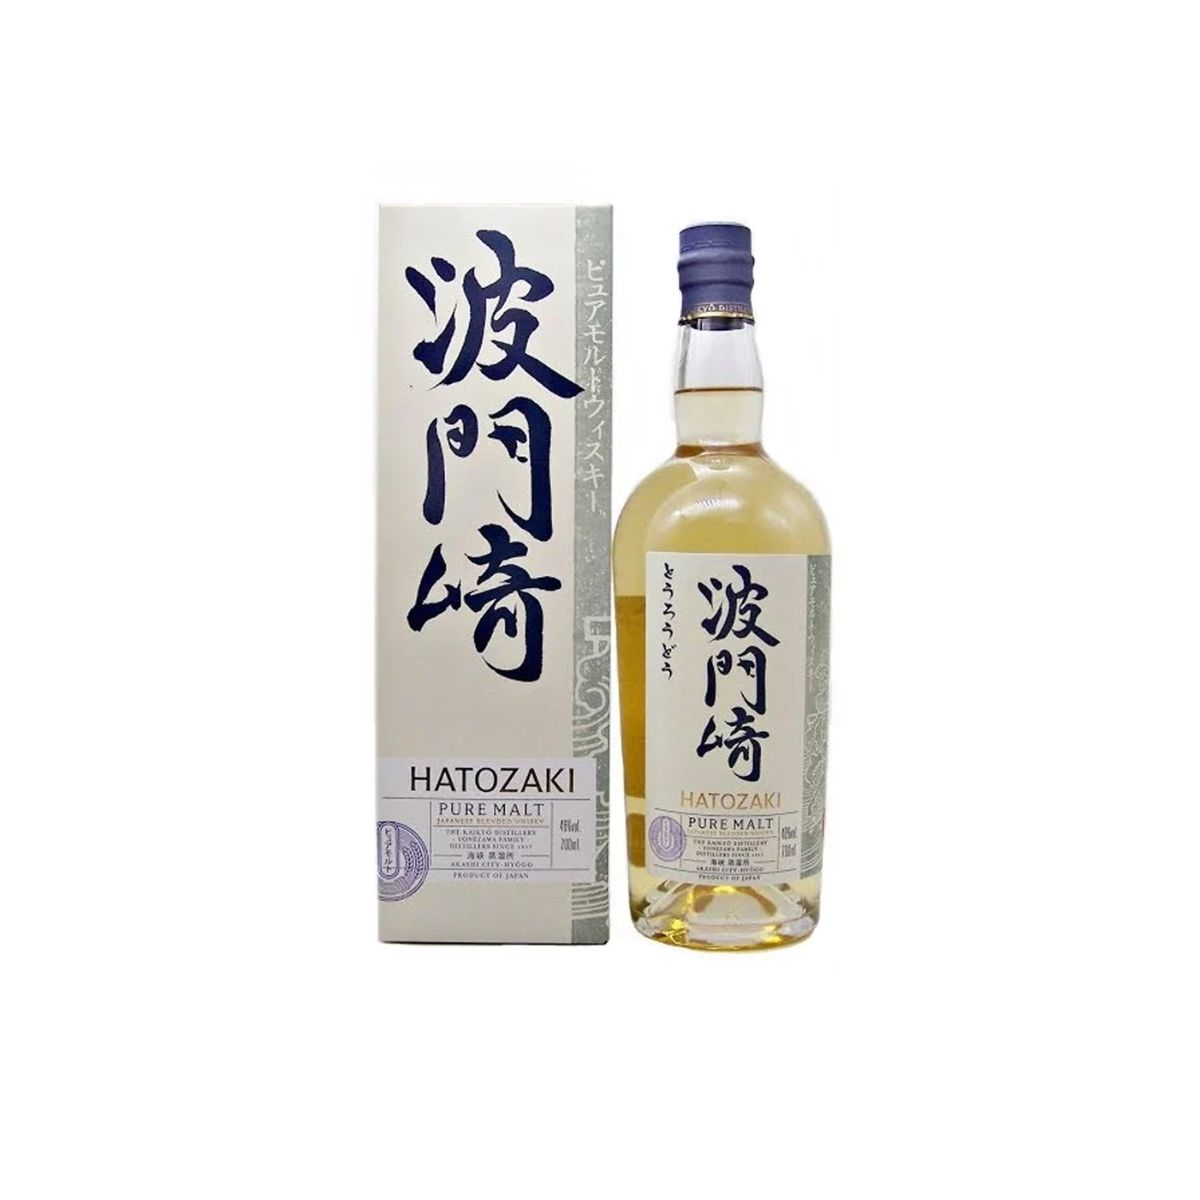 Hatozaki Pure Malt NV Whisky